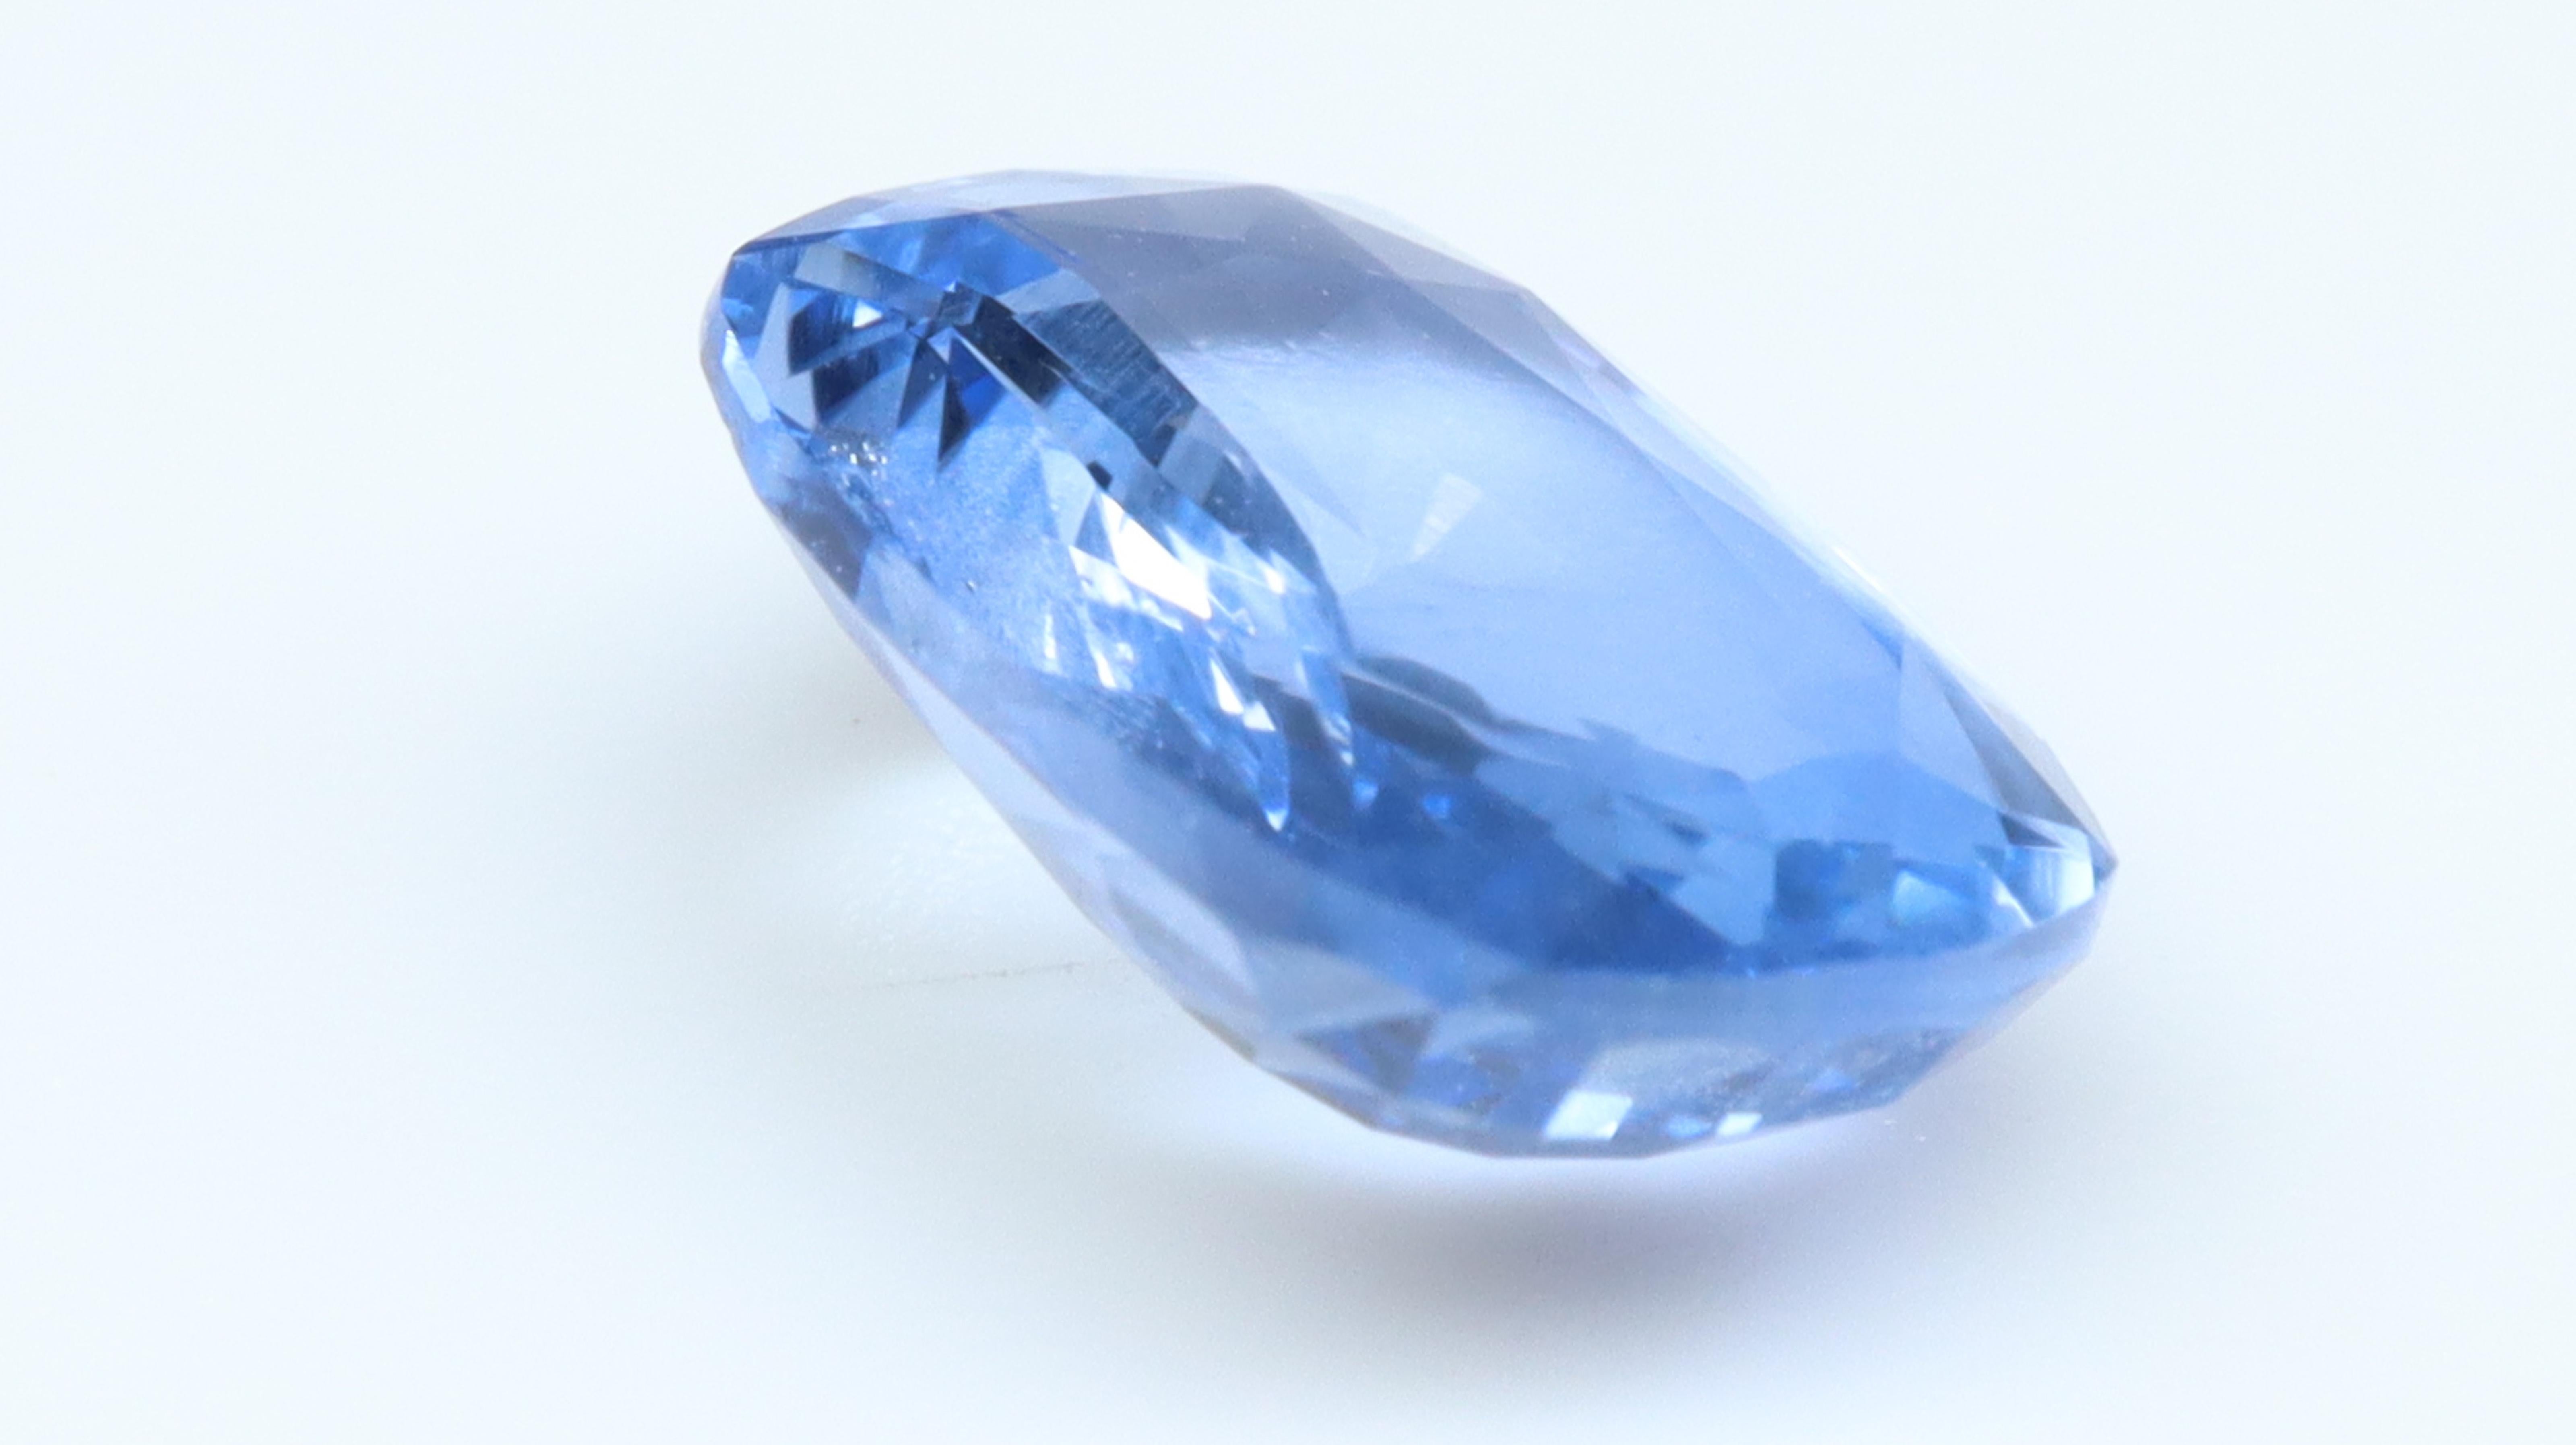 Schöner Stein mit einer hellblauen Farbe mit guter Sättigung und Farbton. Dieser Sapphire wurde keiner Behandlung unterzogen.

Saphire sind wie Rubine eine Variante der Mineralart Korund, die aus Aluminium und Sauerstoff besteht. Er ist ein